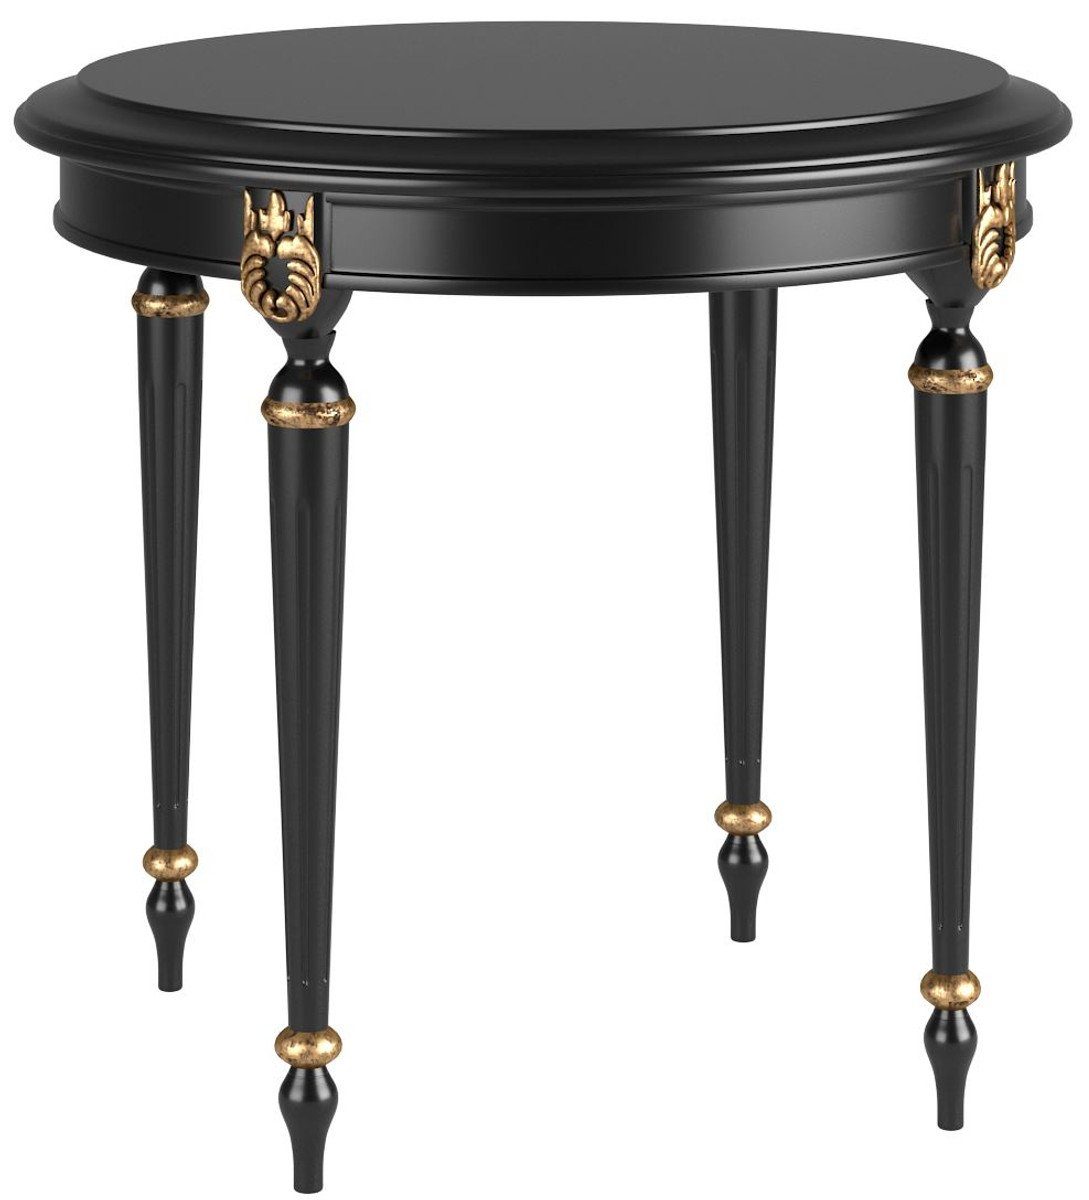 Casa Padrino Beistelltisch Luxus Barock Beistelltisch Schwarz / Antik Gold Ø 60 x H. 60 cm - Edler runder Tisch im Barockstil - Barock Möbel